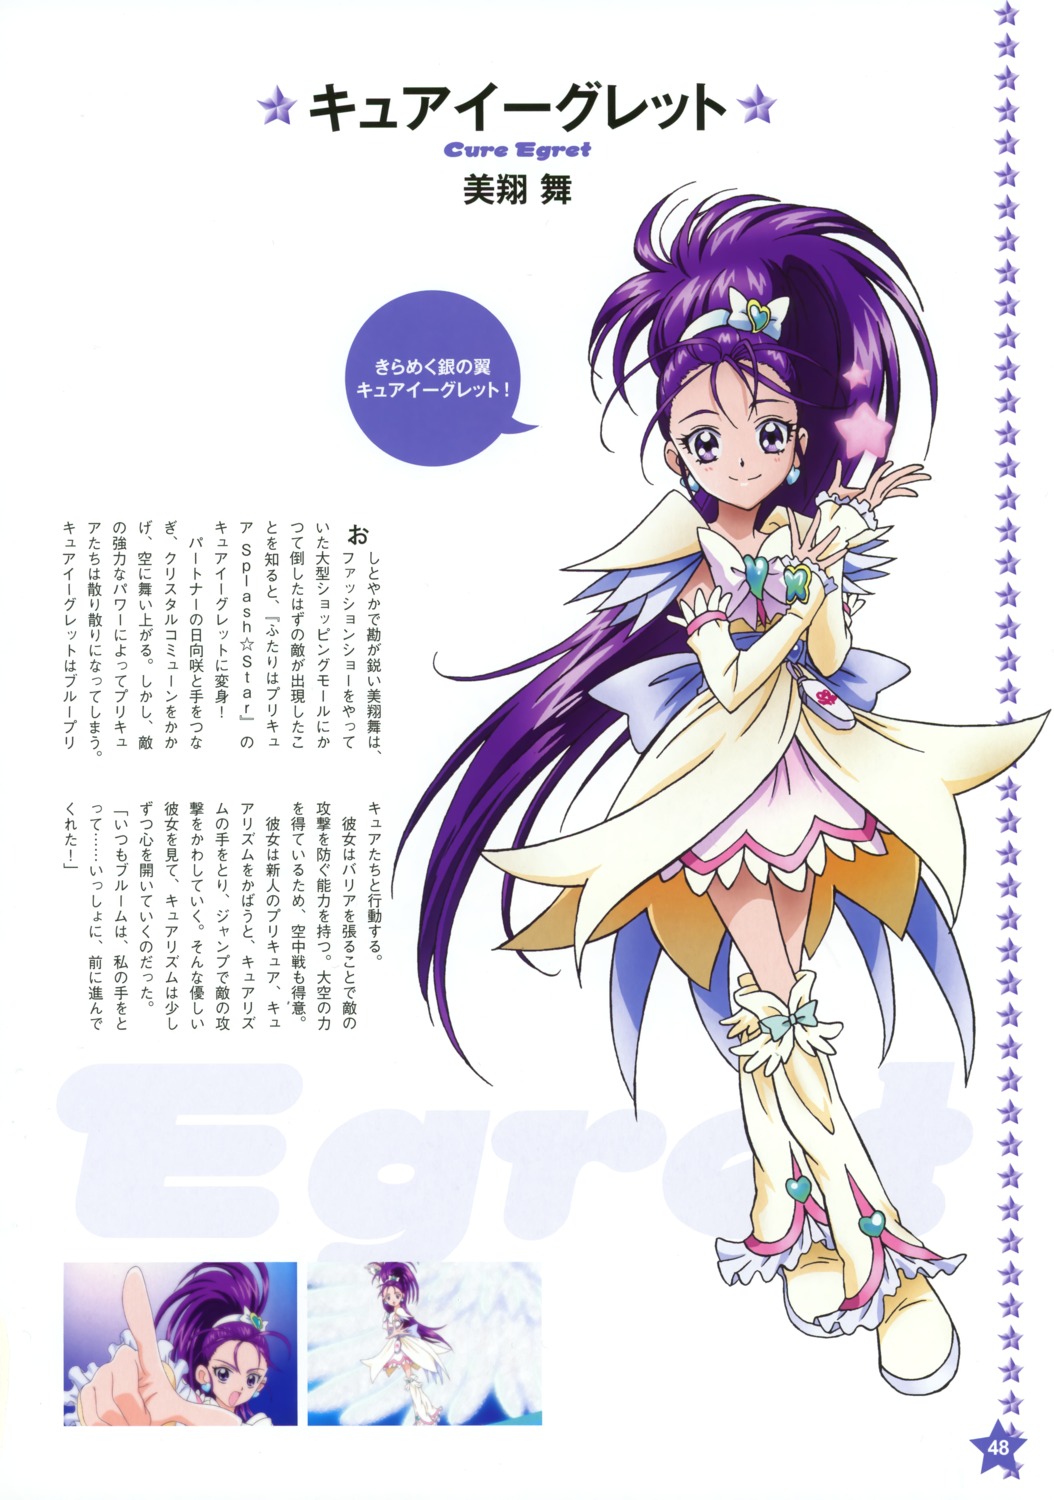 Kawamura Toshie Futari Wa Pretty Cure Futari Wa Pretty Cure Splash Star Pretty Cure Mishou Mai 8951